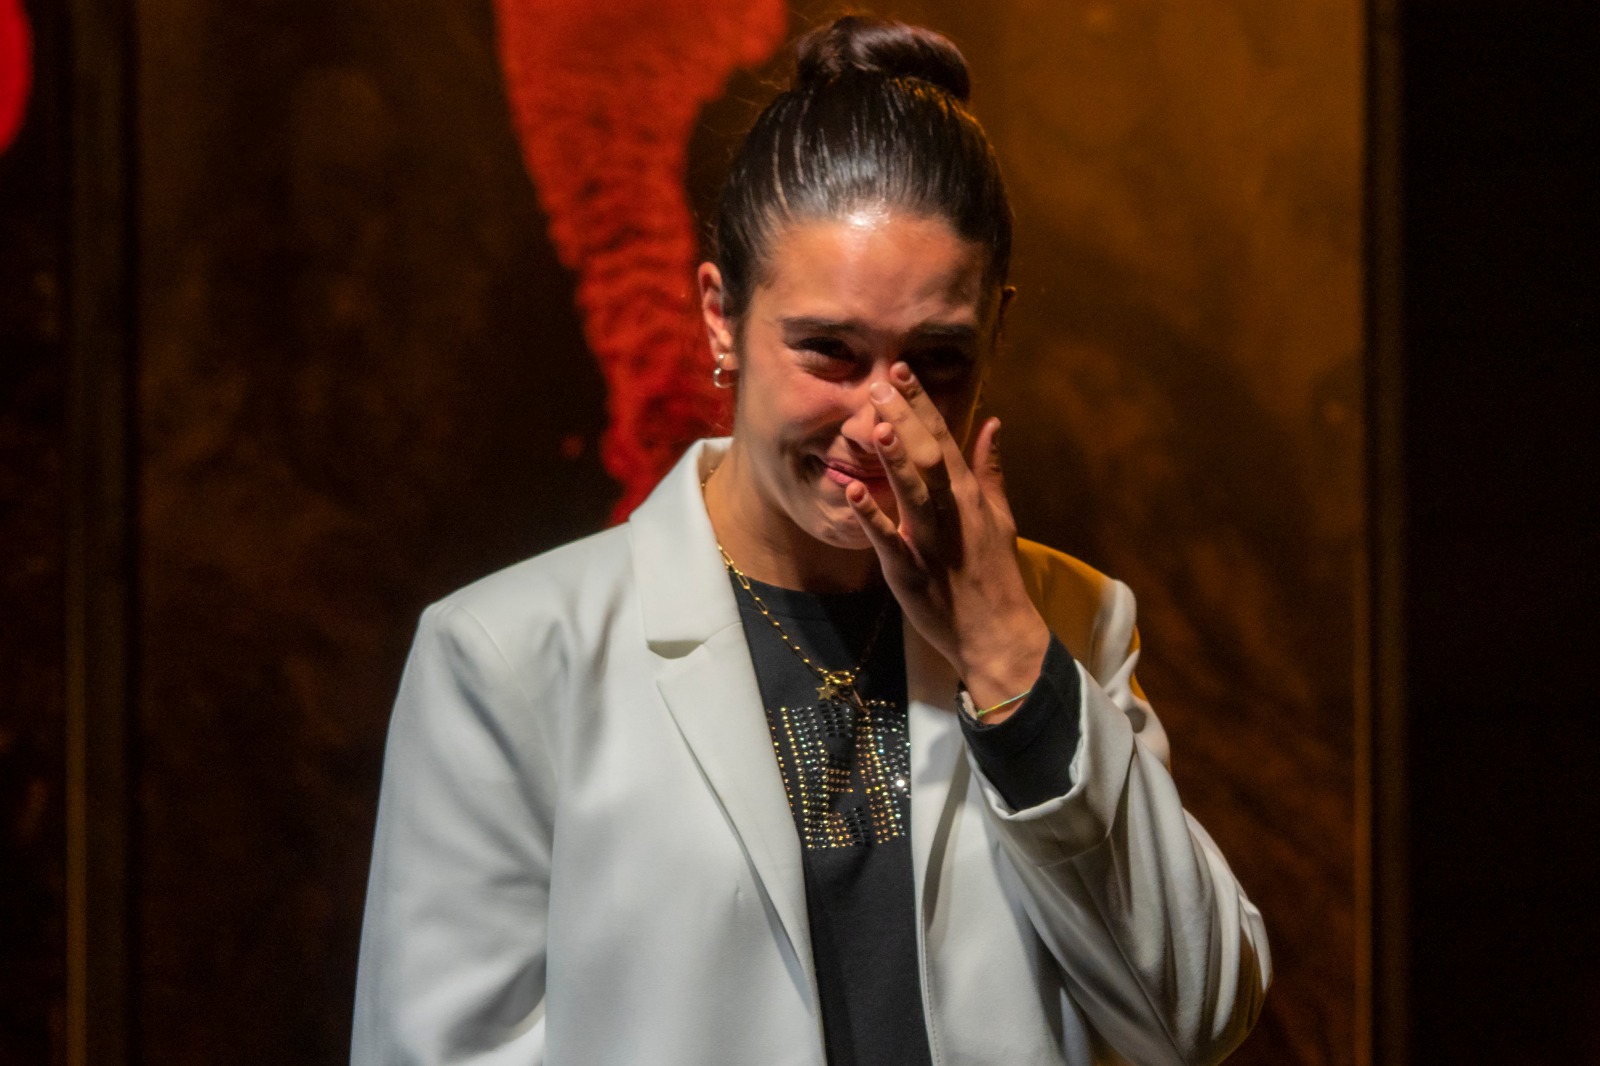 Claudia Abela, llorantdo, durante su actuación en El Paso